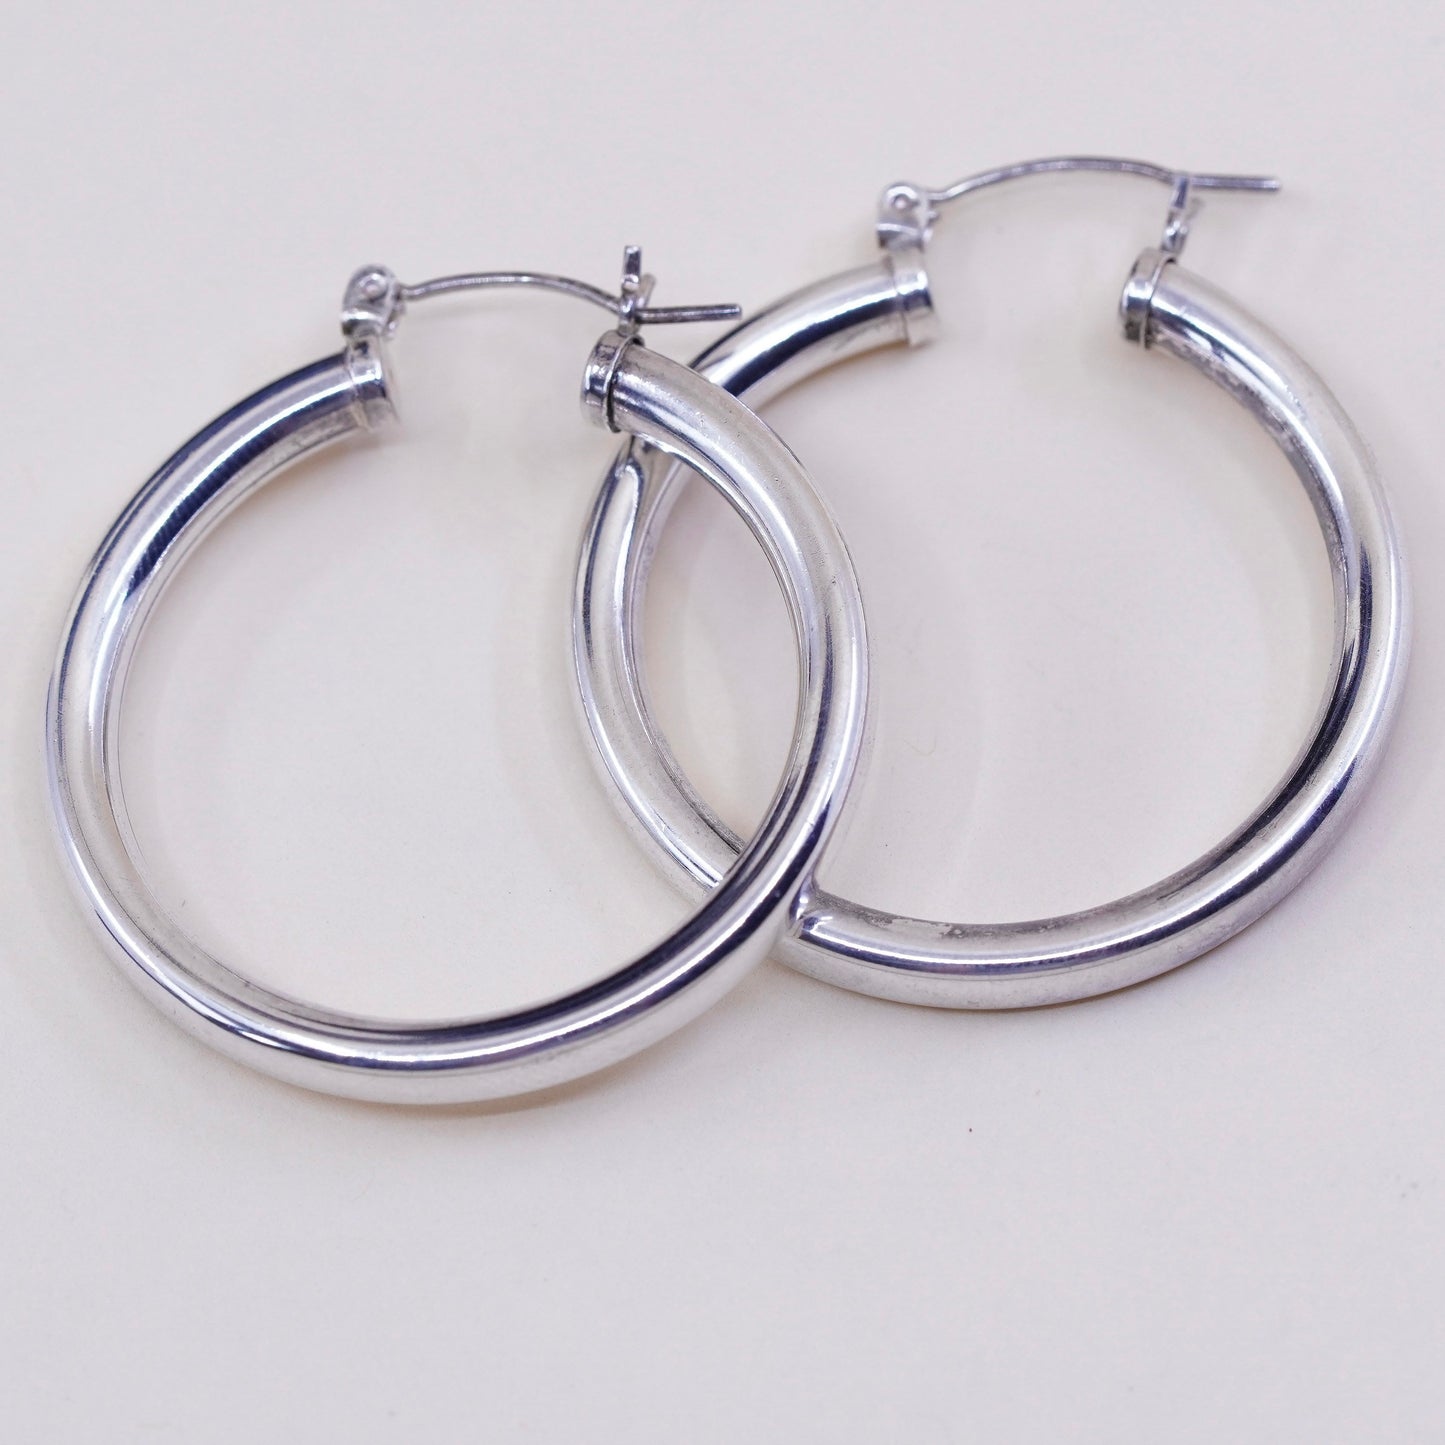 1.25”, Vintage sterling silver loop earrings, minimalist primitive hoops